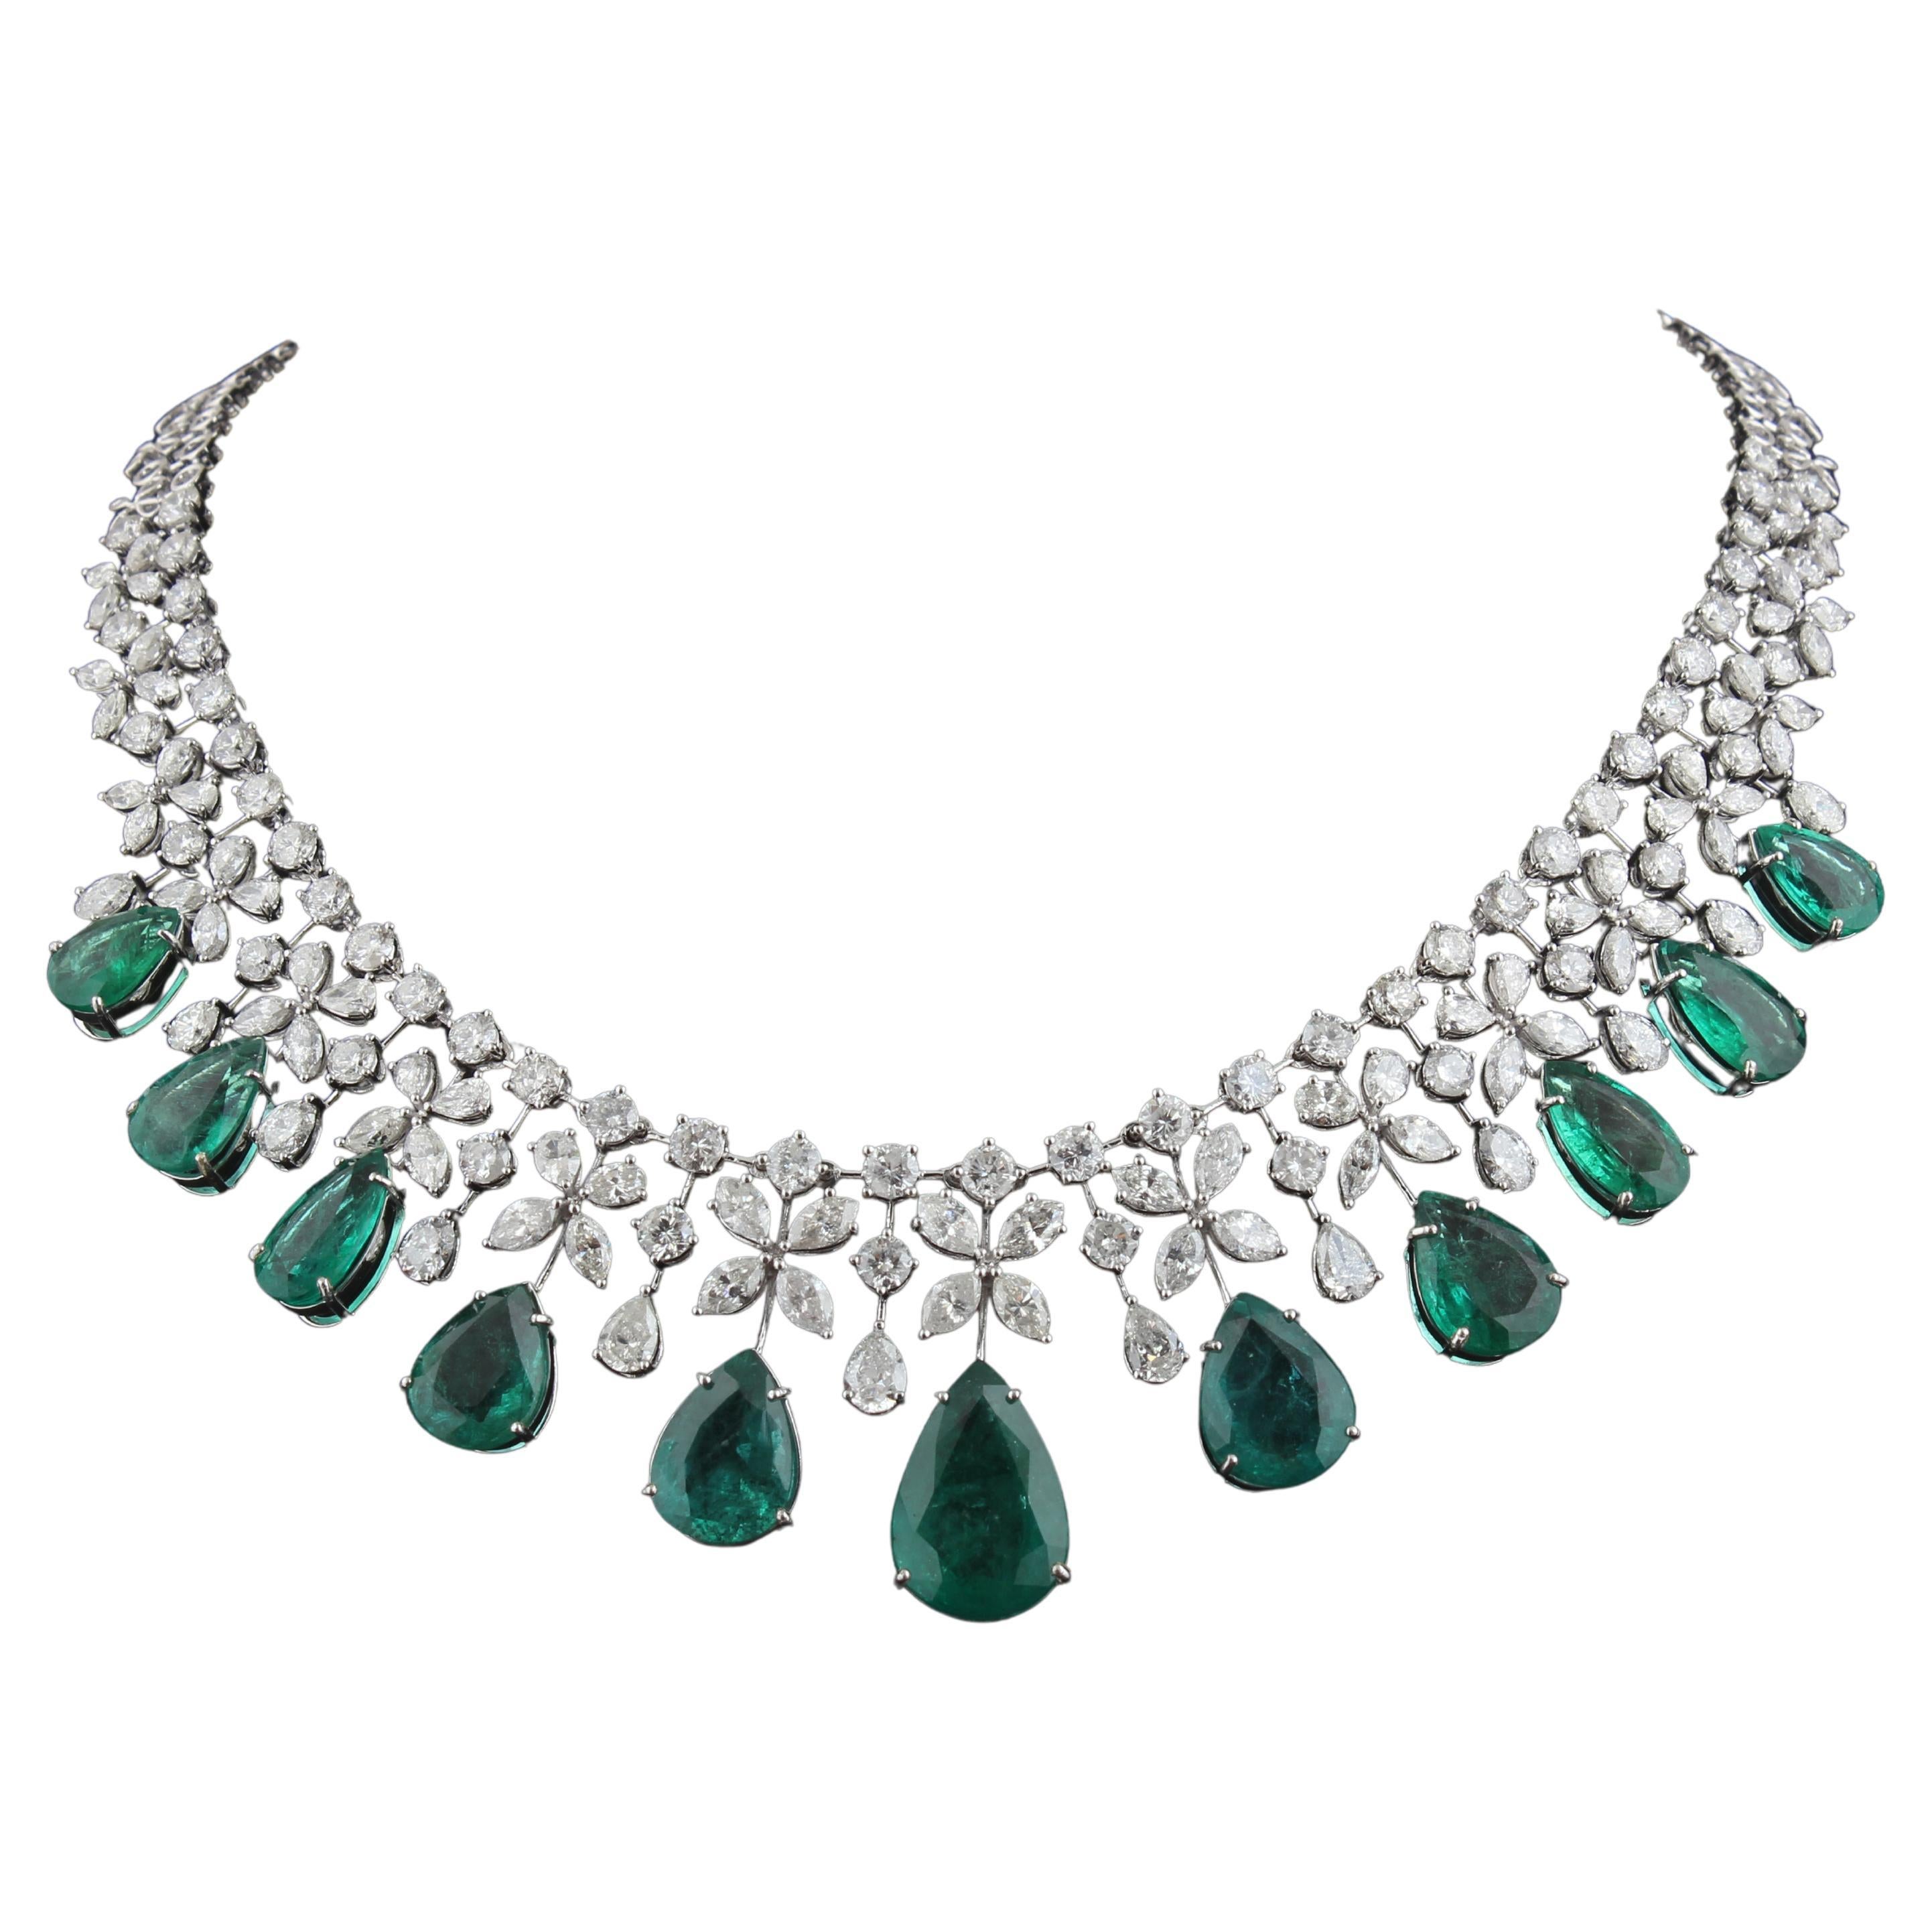 Costco Wholesale | Gemstone bracelets, Jewelry, Silver jewelry accessories